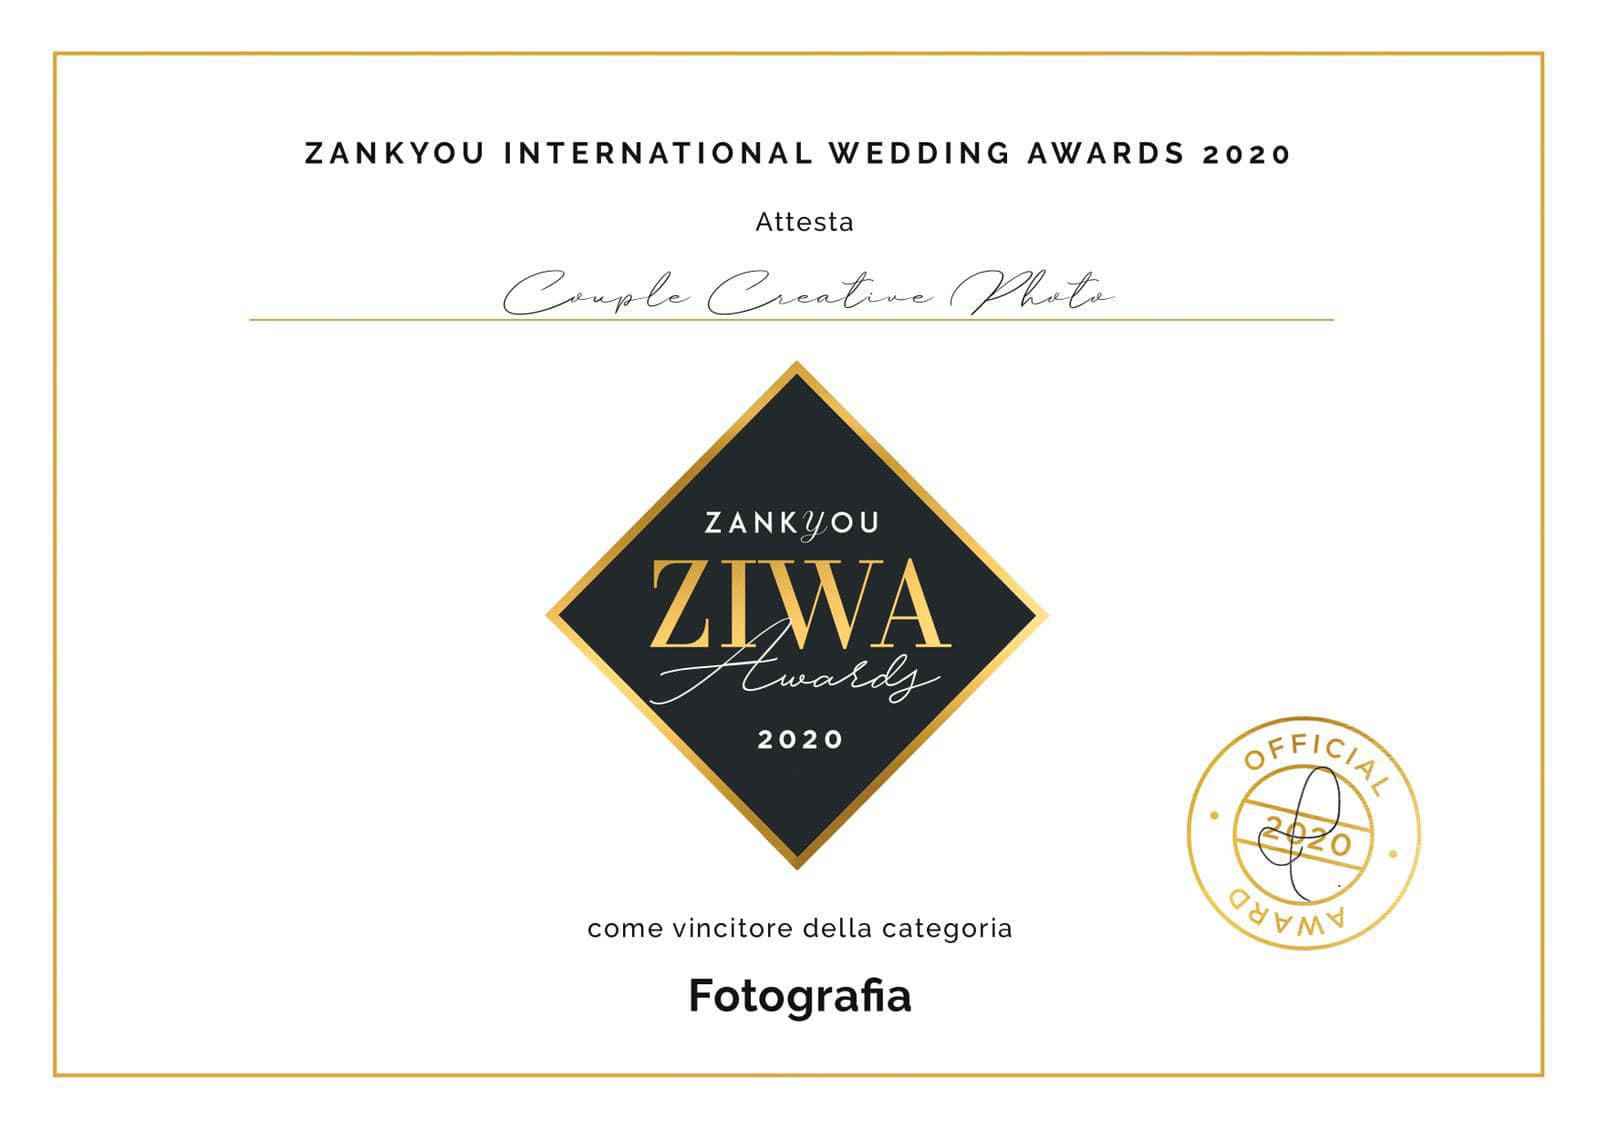 Couple Creative Photo premiati agli ZIWA 2020